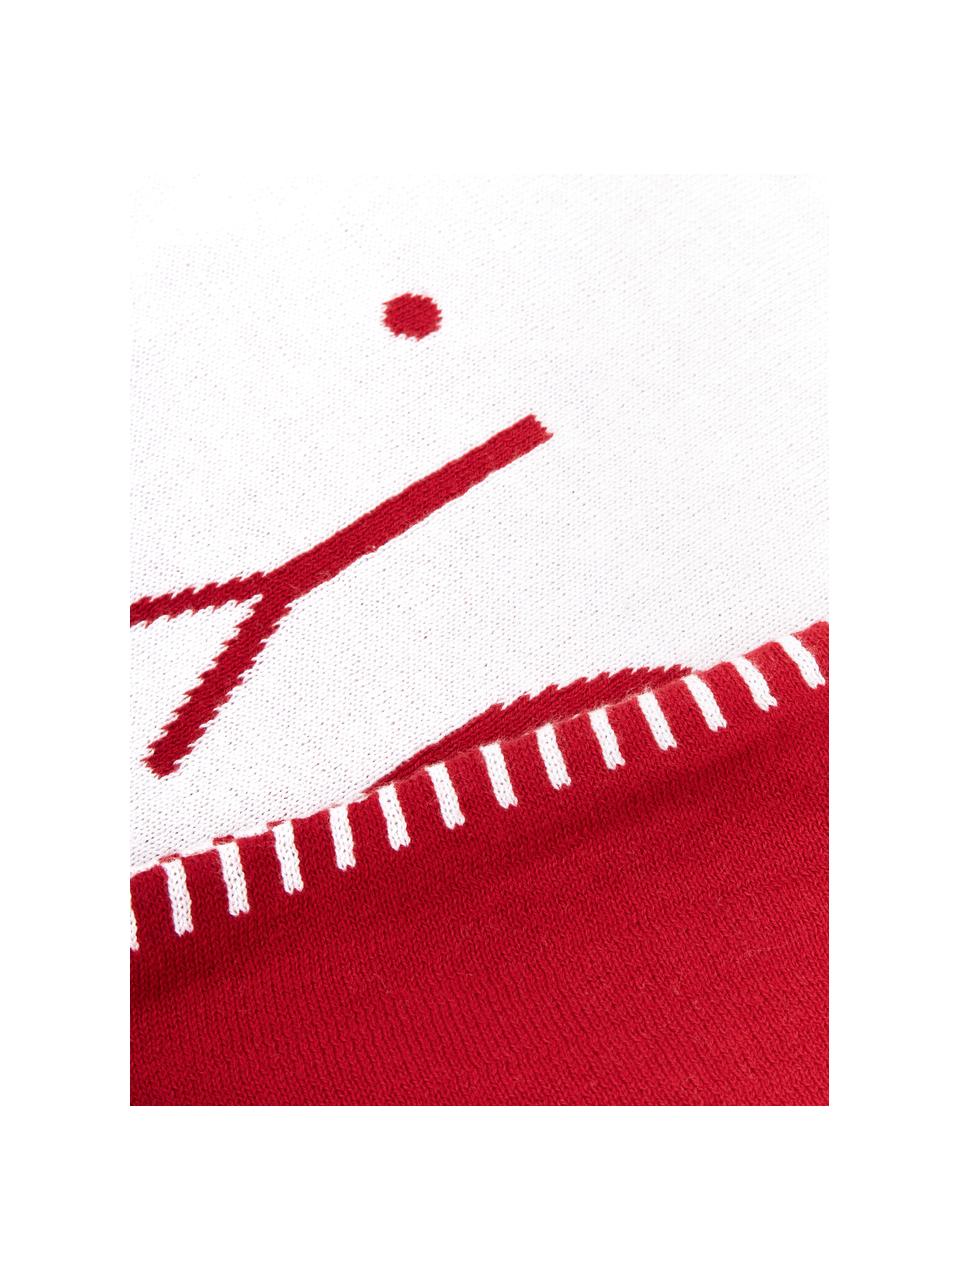 Jemne pletený obojstranný poťah na vankúš s nápisom Jolanda, Červená, krémovobiela